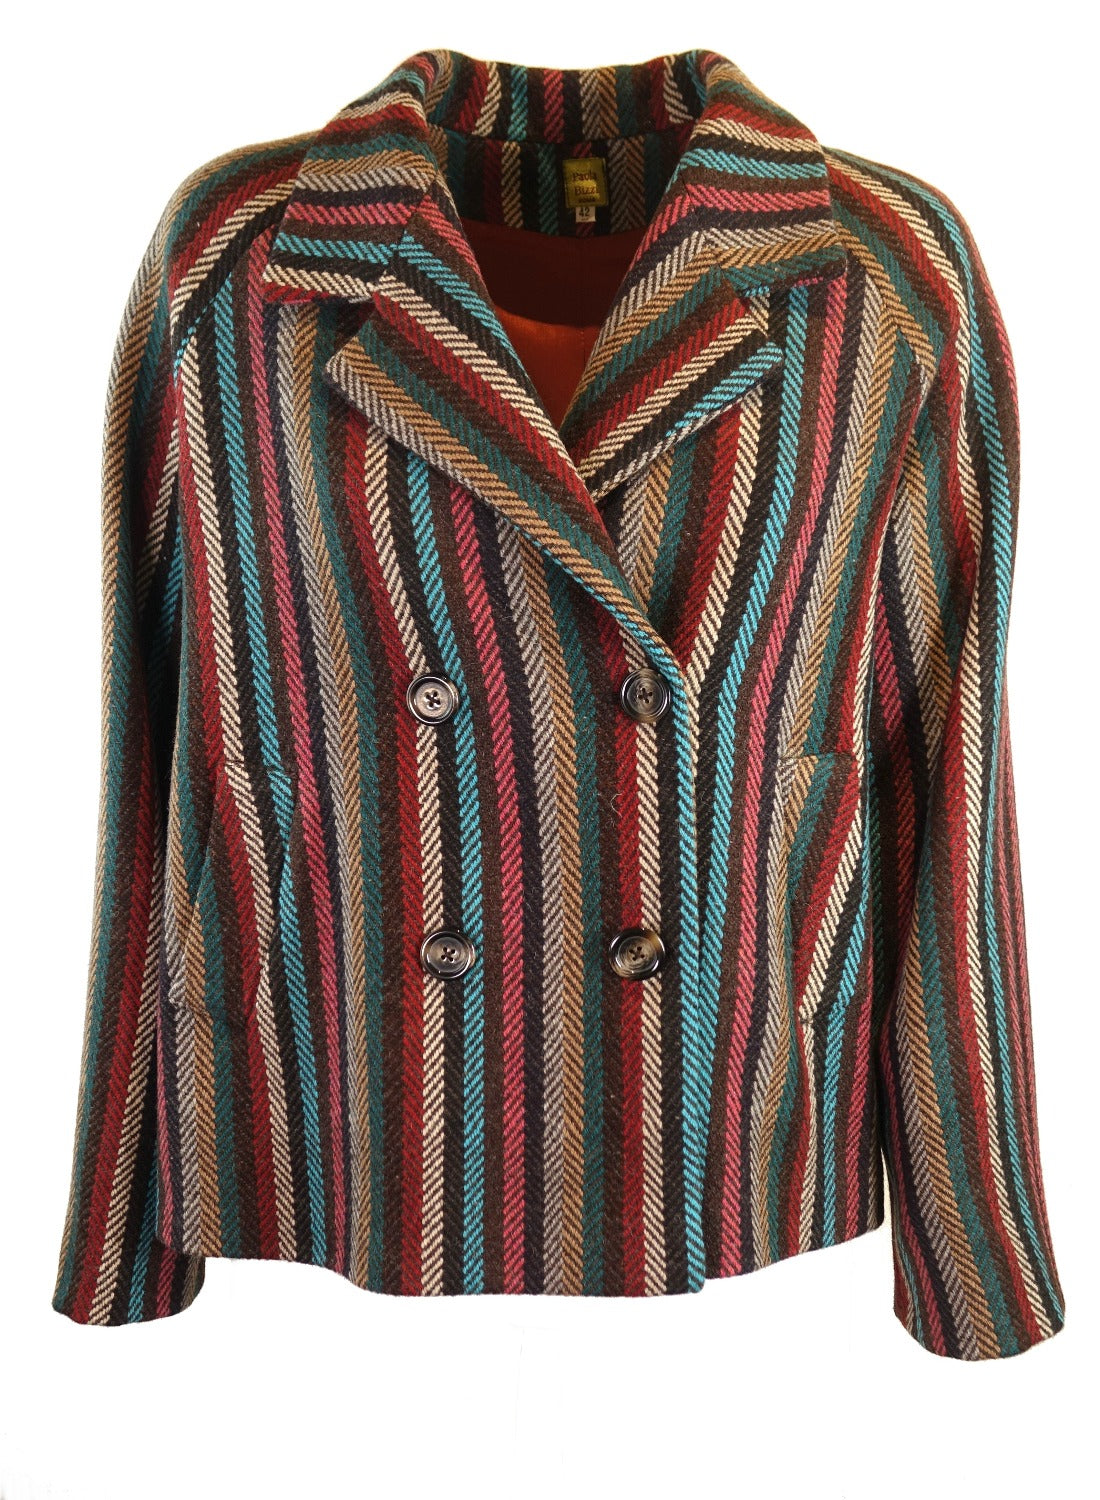 Brest jacket in multicolored striped wool